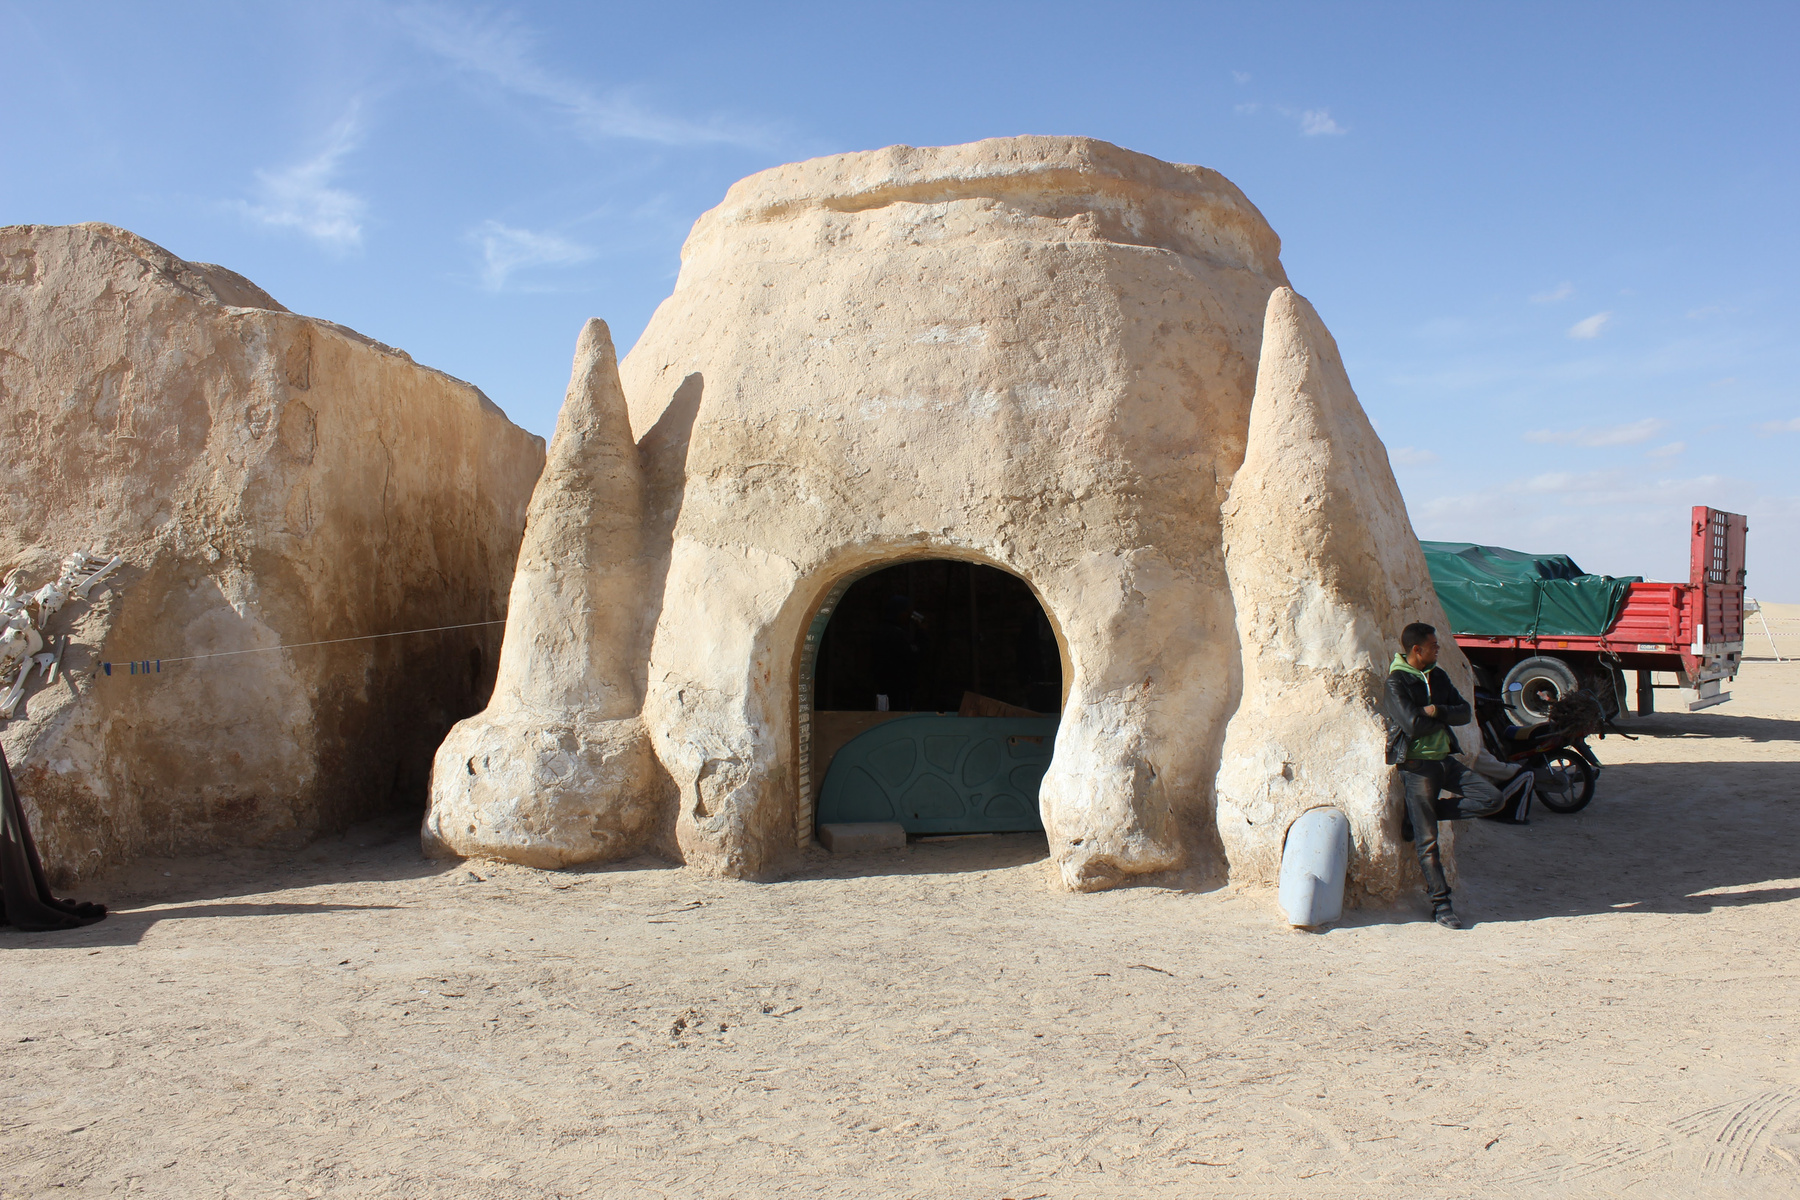 A sivatag szélén, de a lakott területektől távol  található a világ Star Wars rajongóinak csak Mos Espaként ismert otthagyott filmdíszlet. 